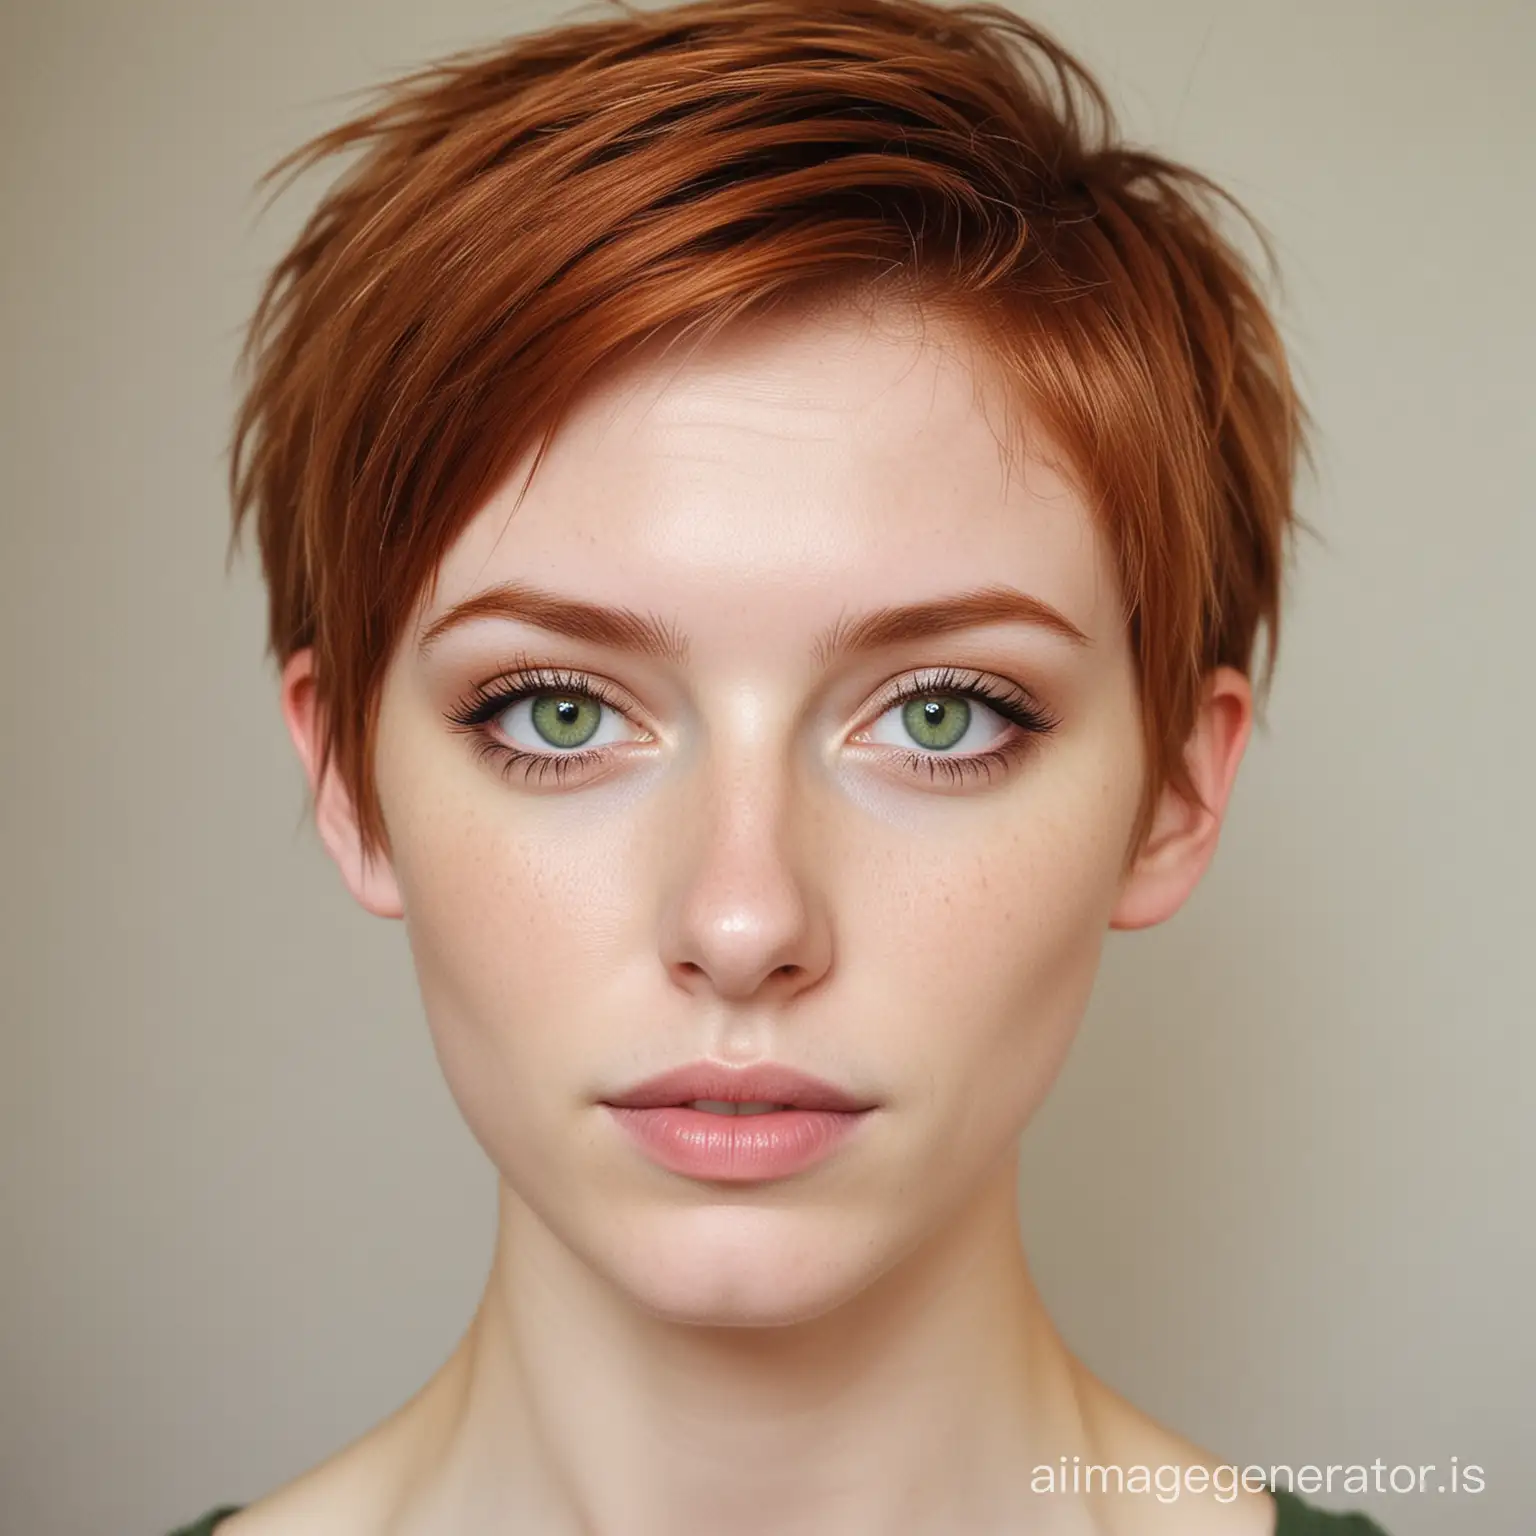 skinny girl, white skin, short ginger hair, green eyes